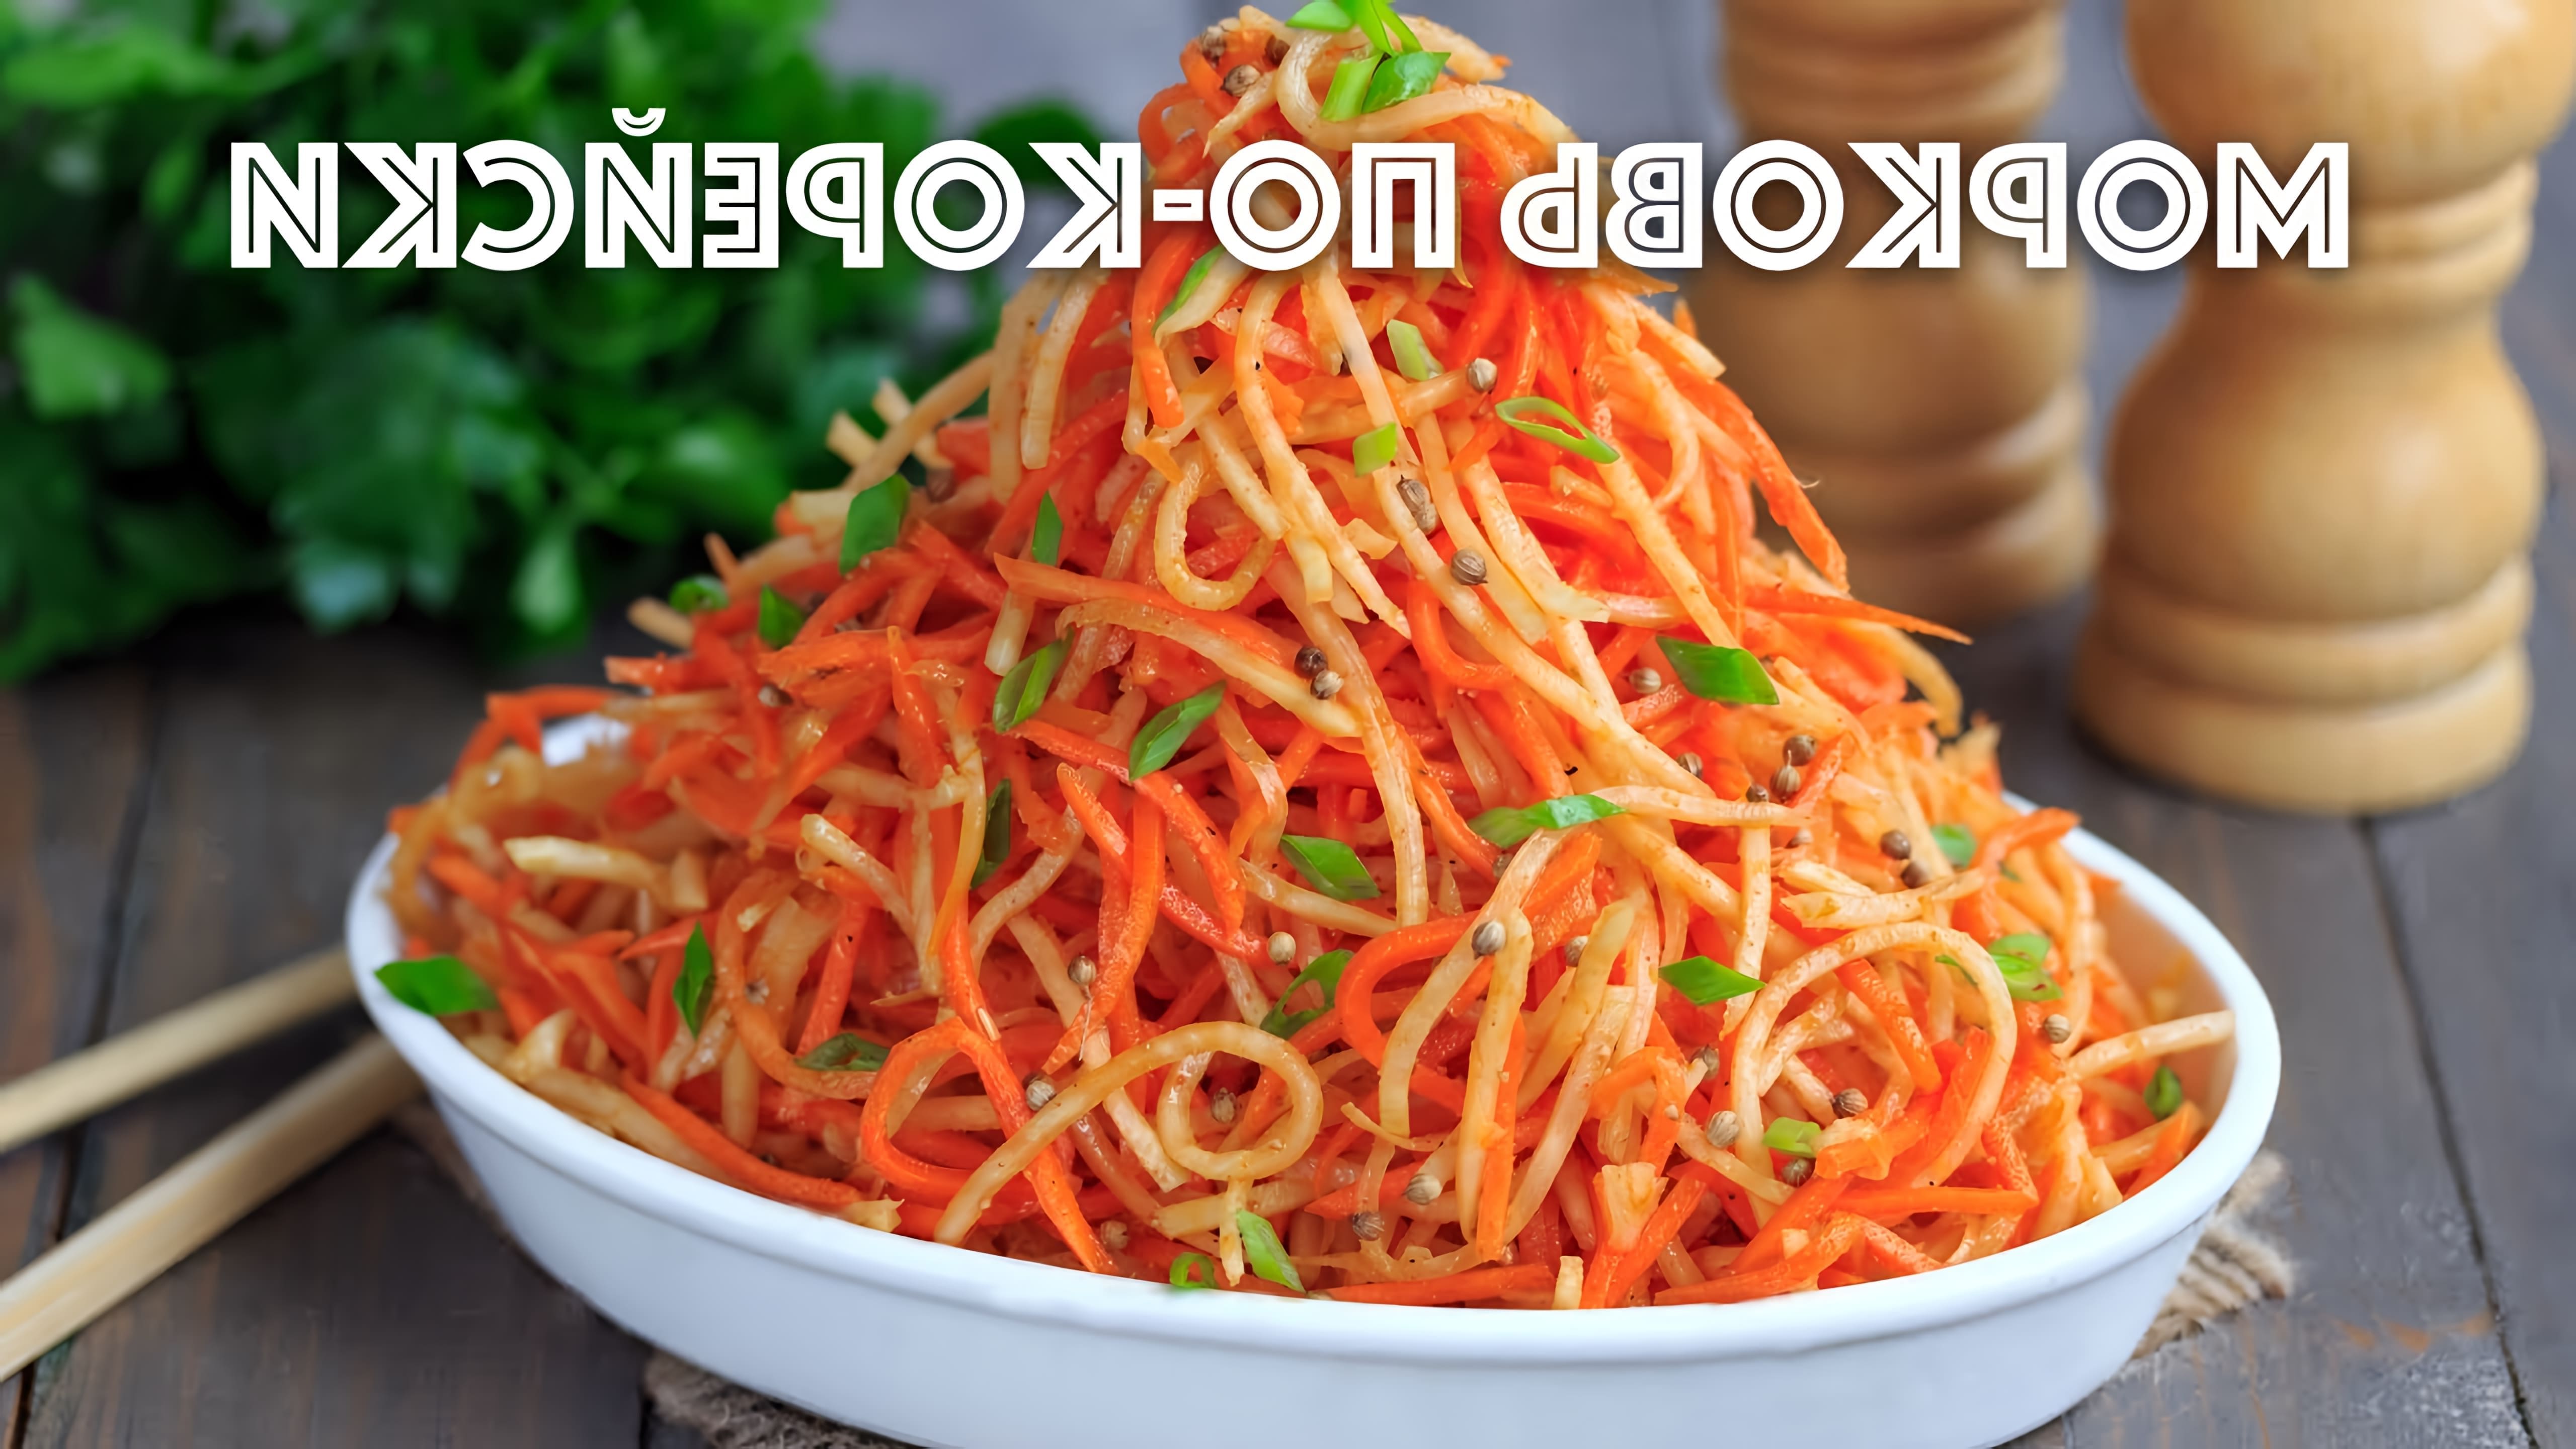 В этом видео-ролике будет представлен рецепт приготовления моркови по-корейски с добавлением сельдерея